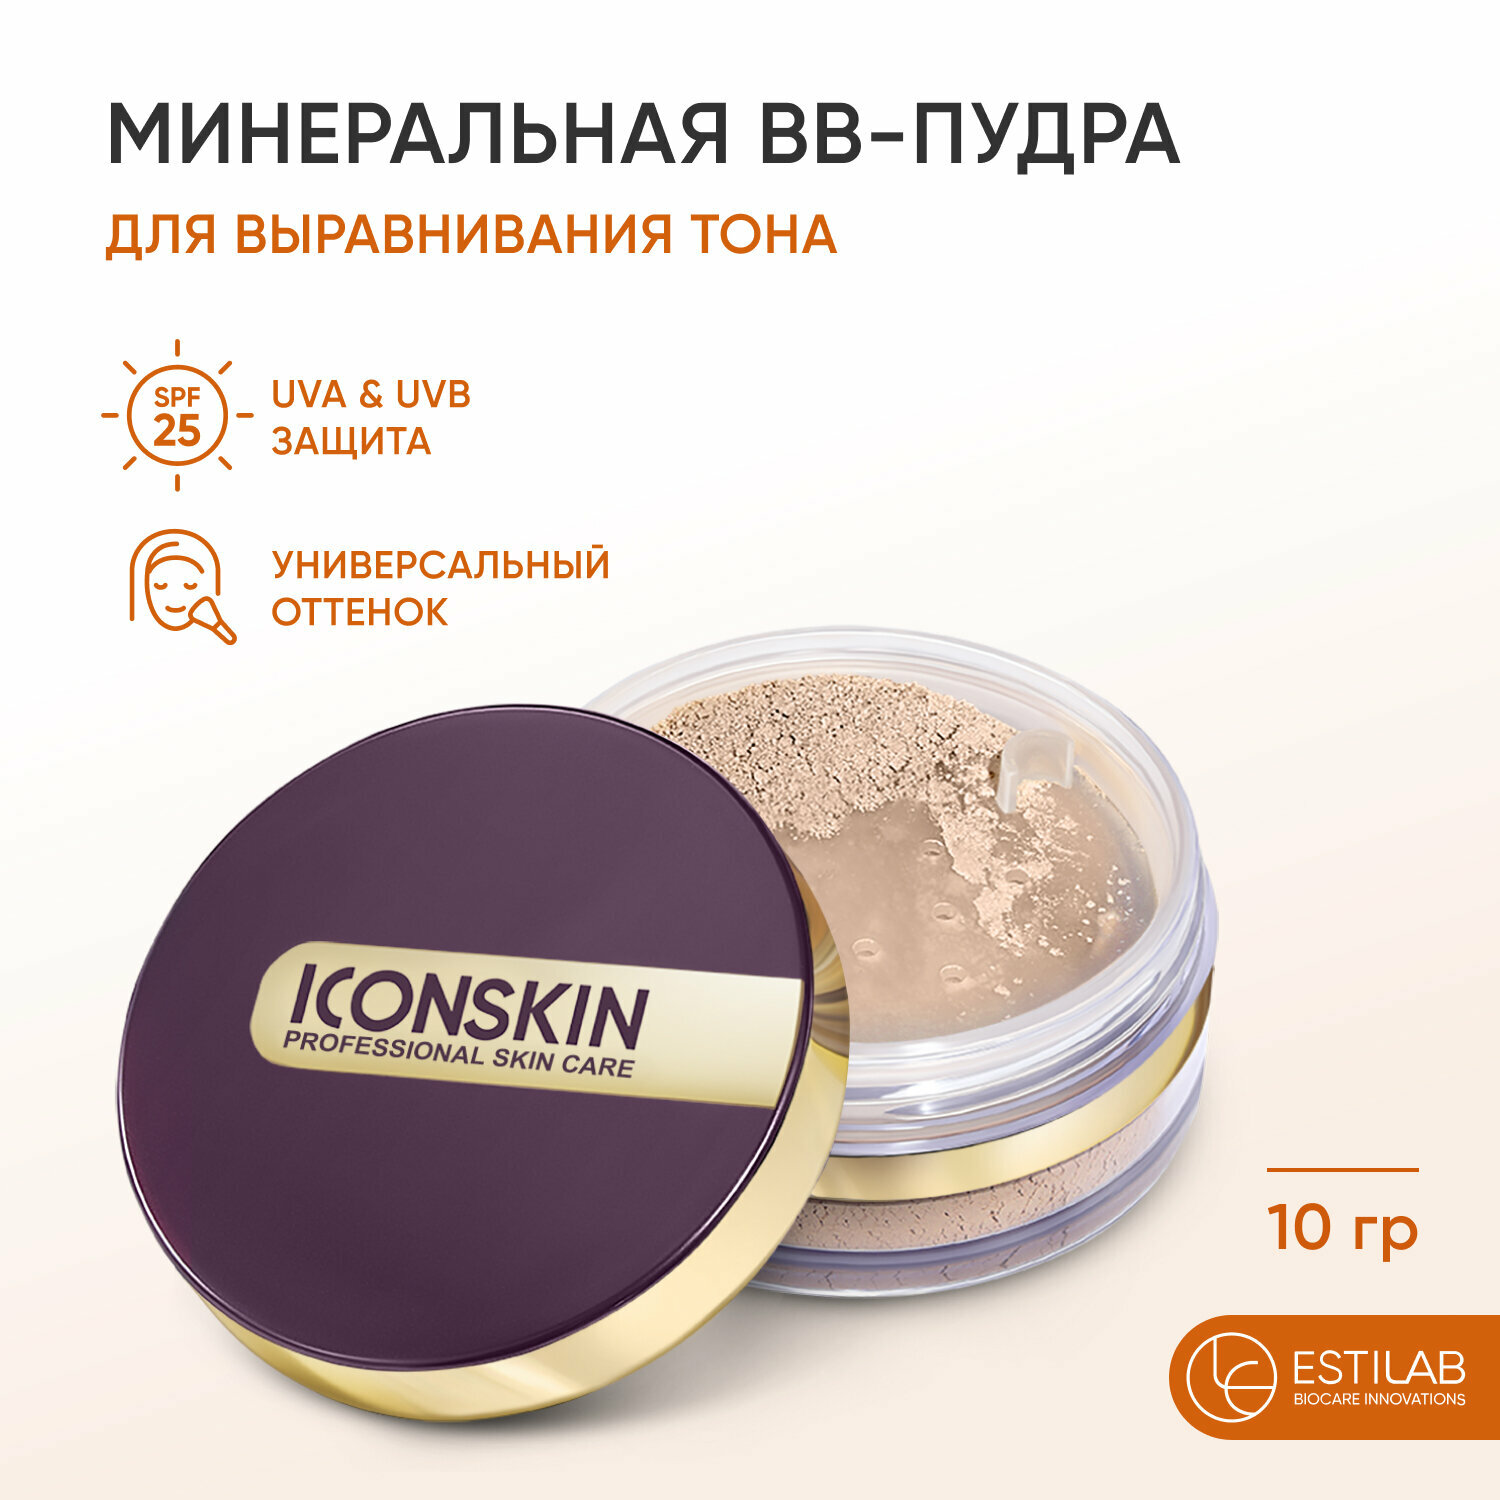 ICON SKIN / Минеральная ВВ-пудра для выравнивания тона, защита, аnti-pollution, SPF25, для всех типов кожи